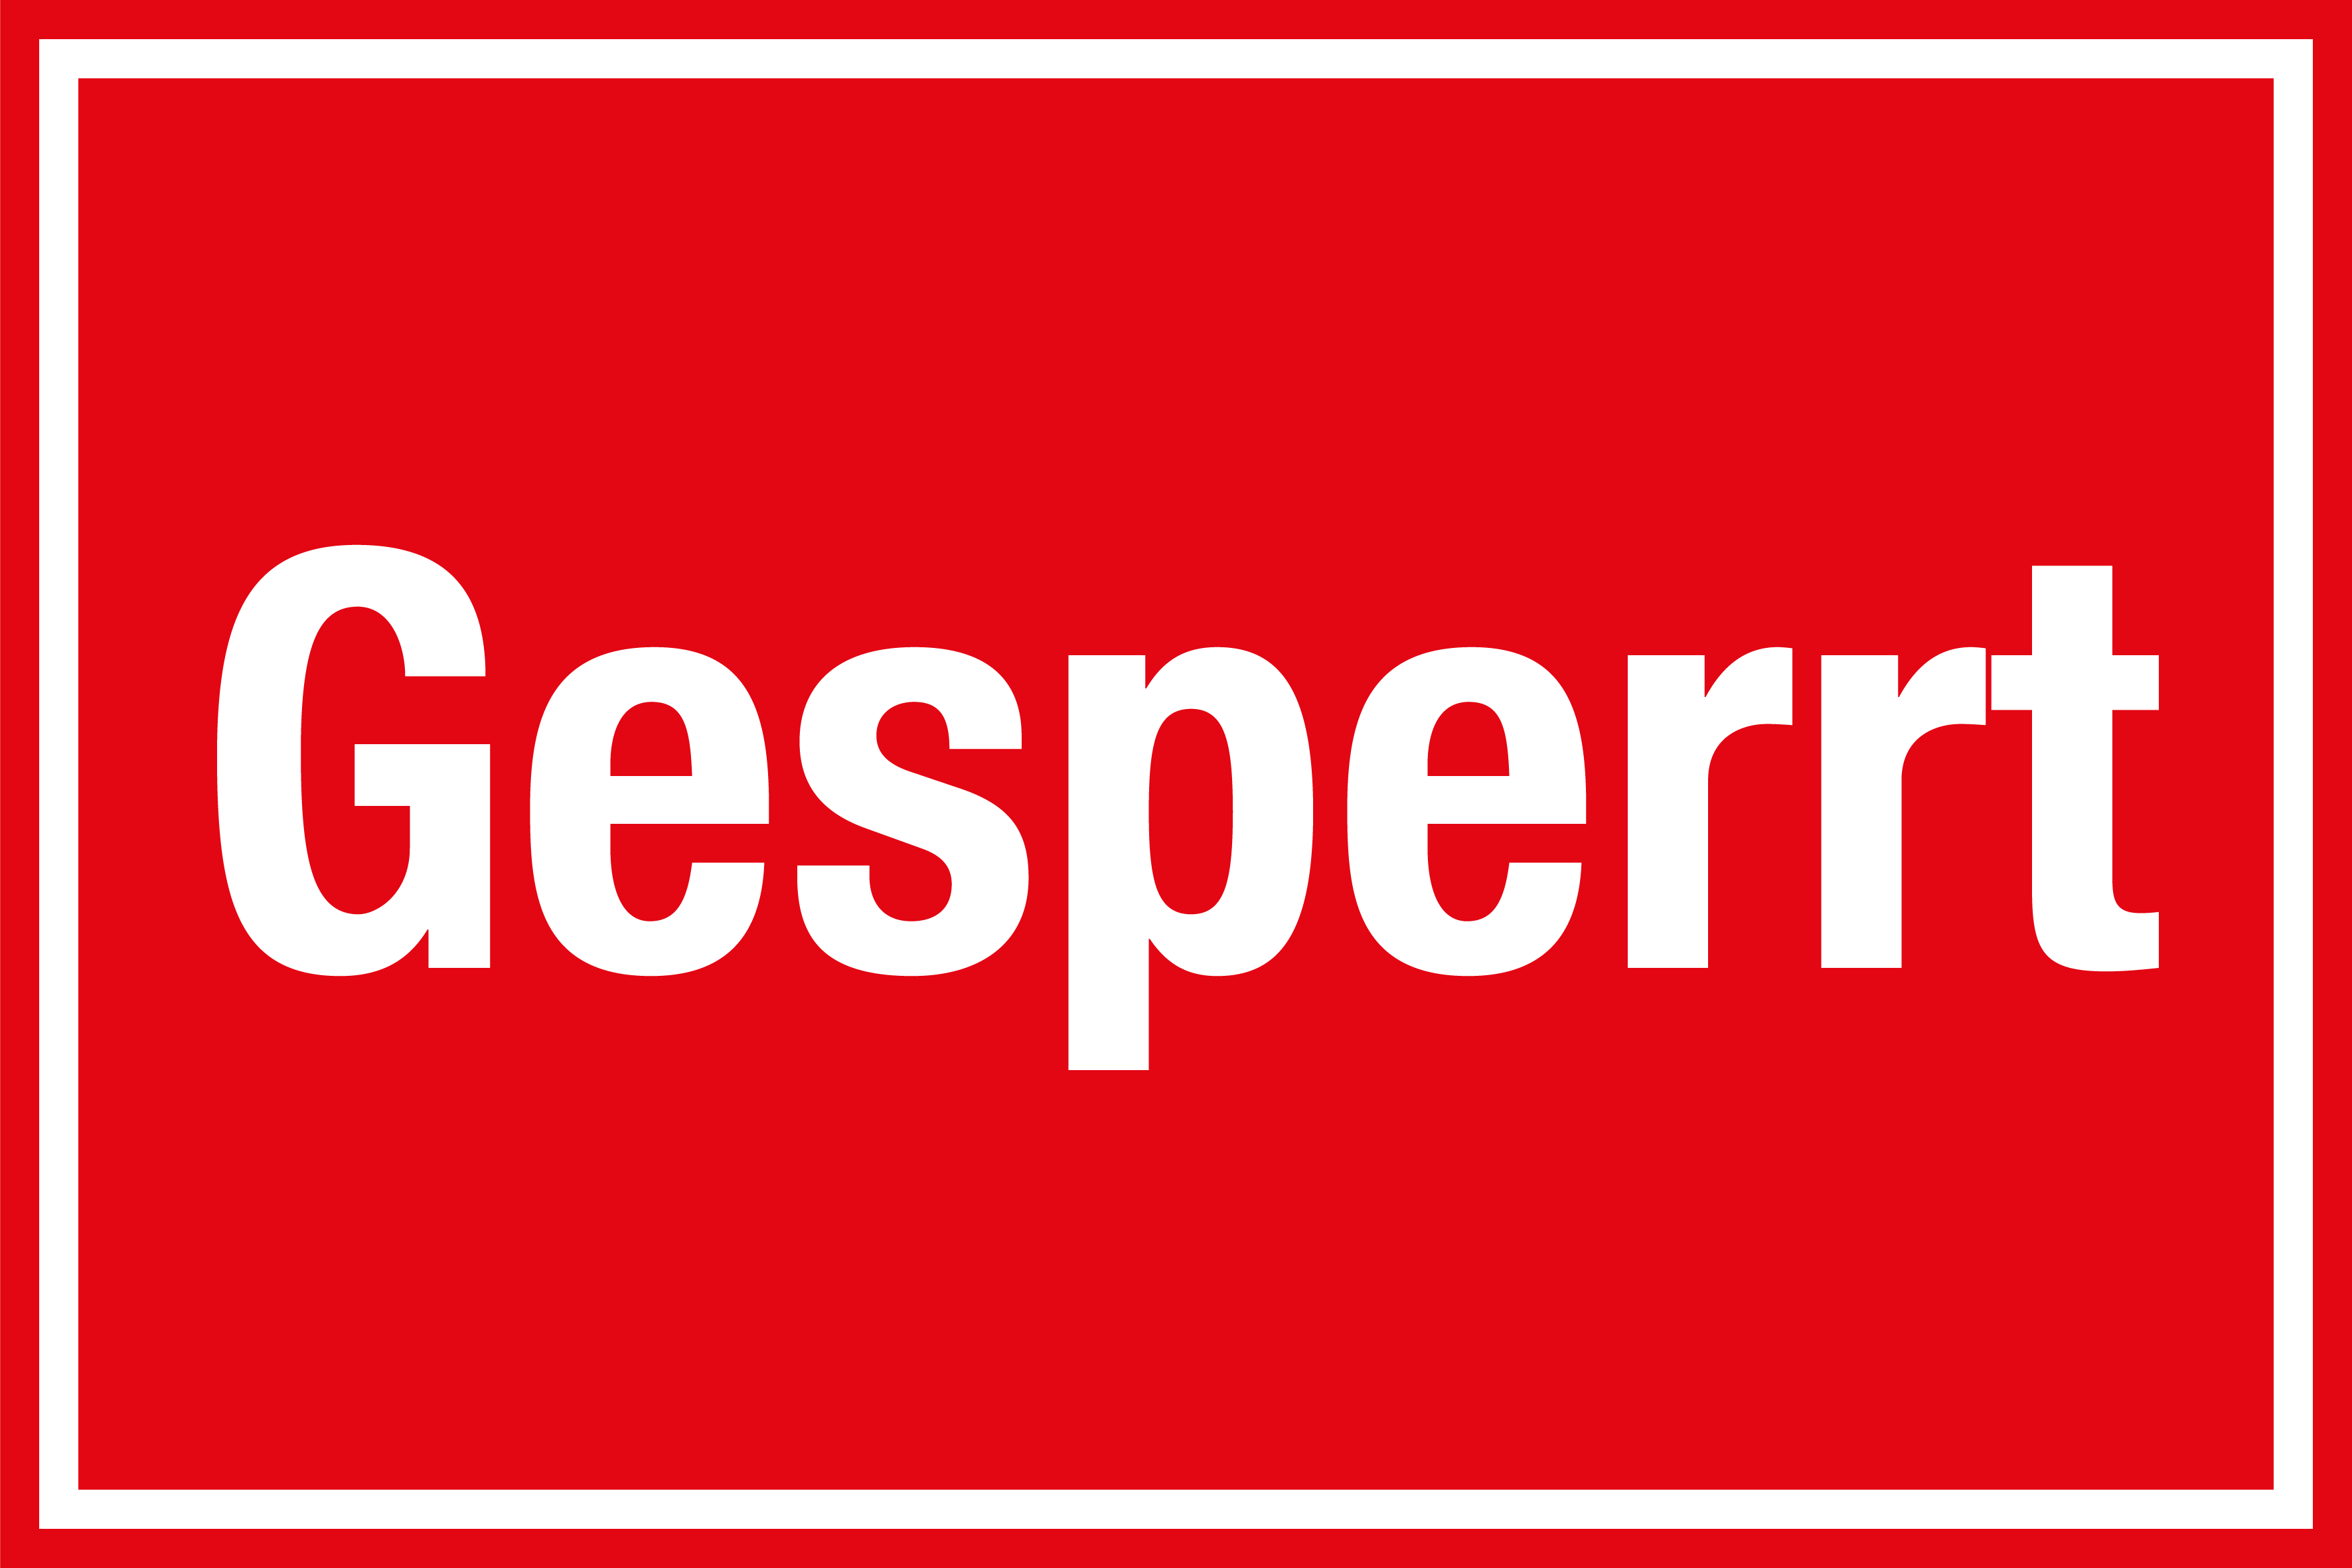 Hinweisschild - Gesperrt - Folie Selbstklebend - 20 x 30 cm